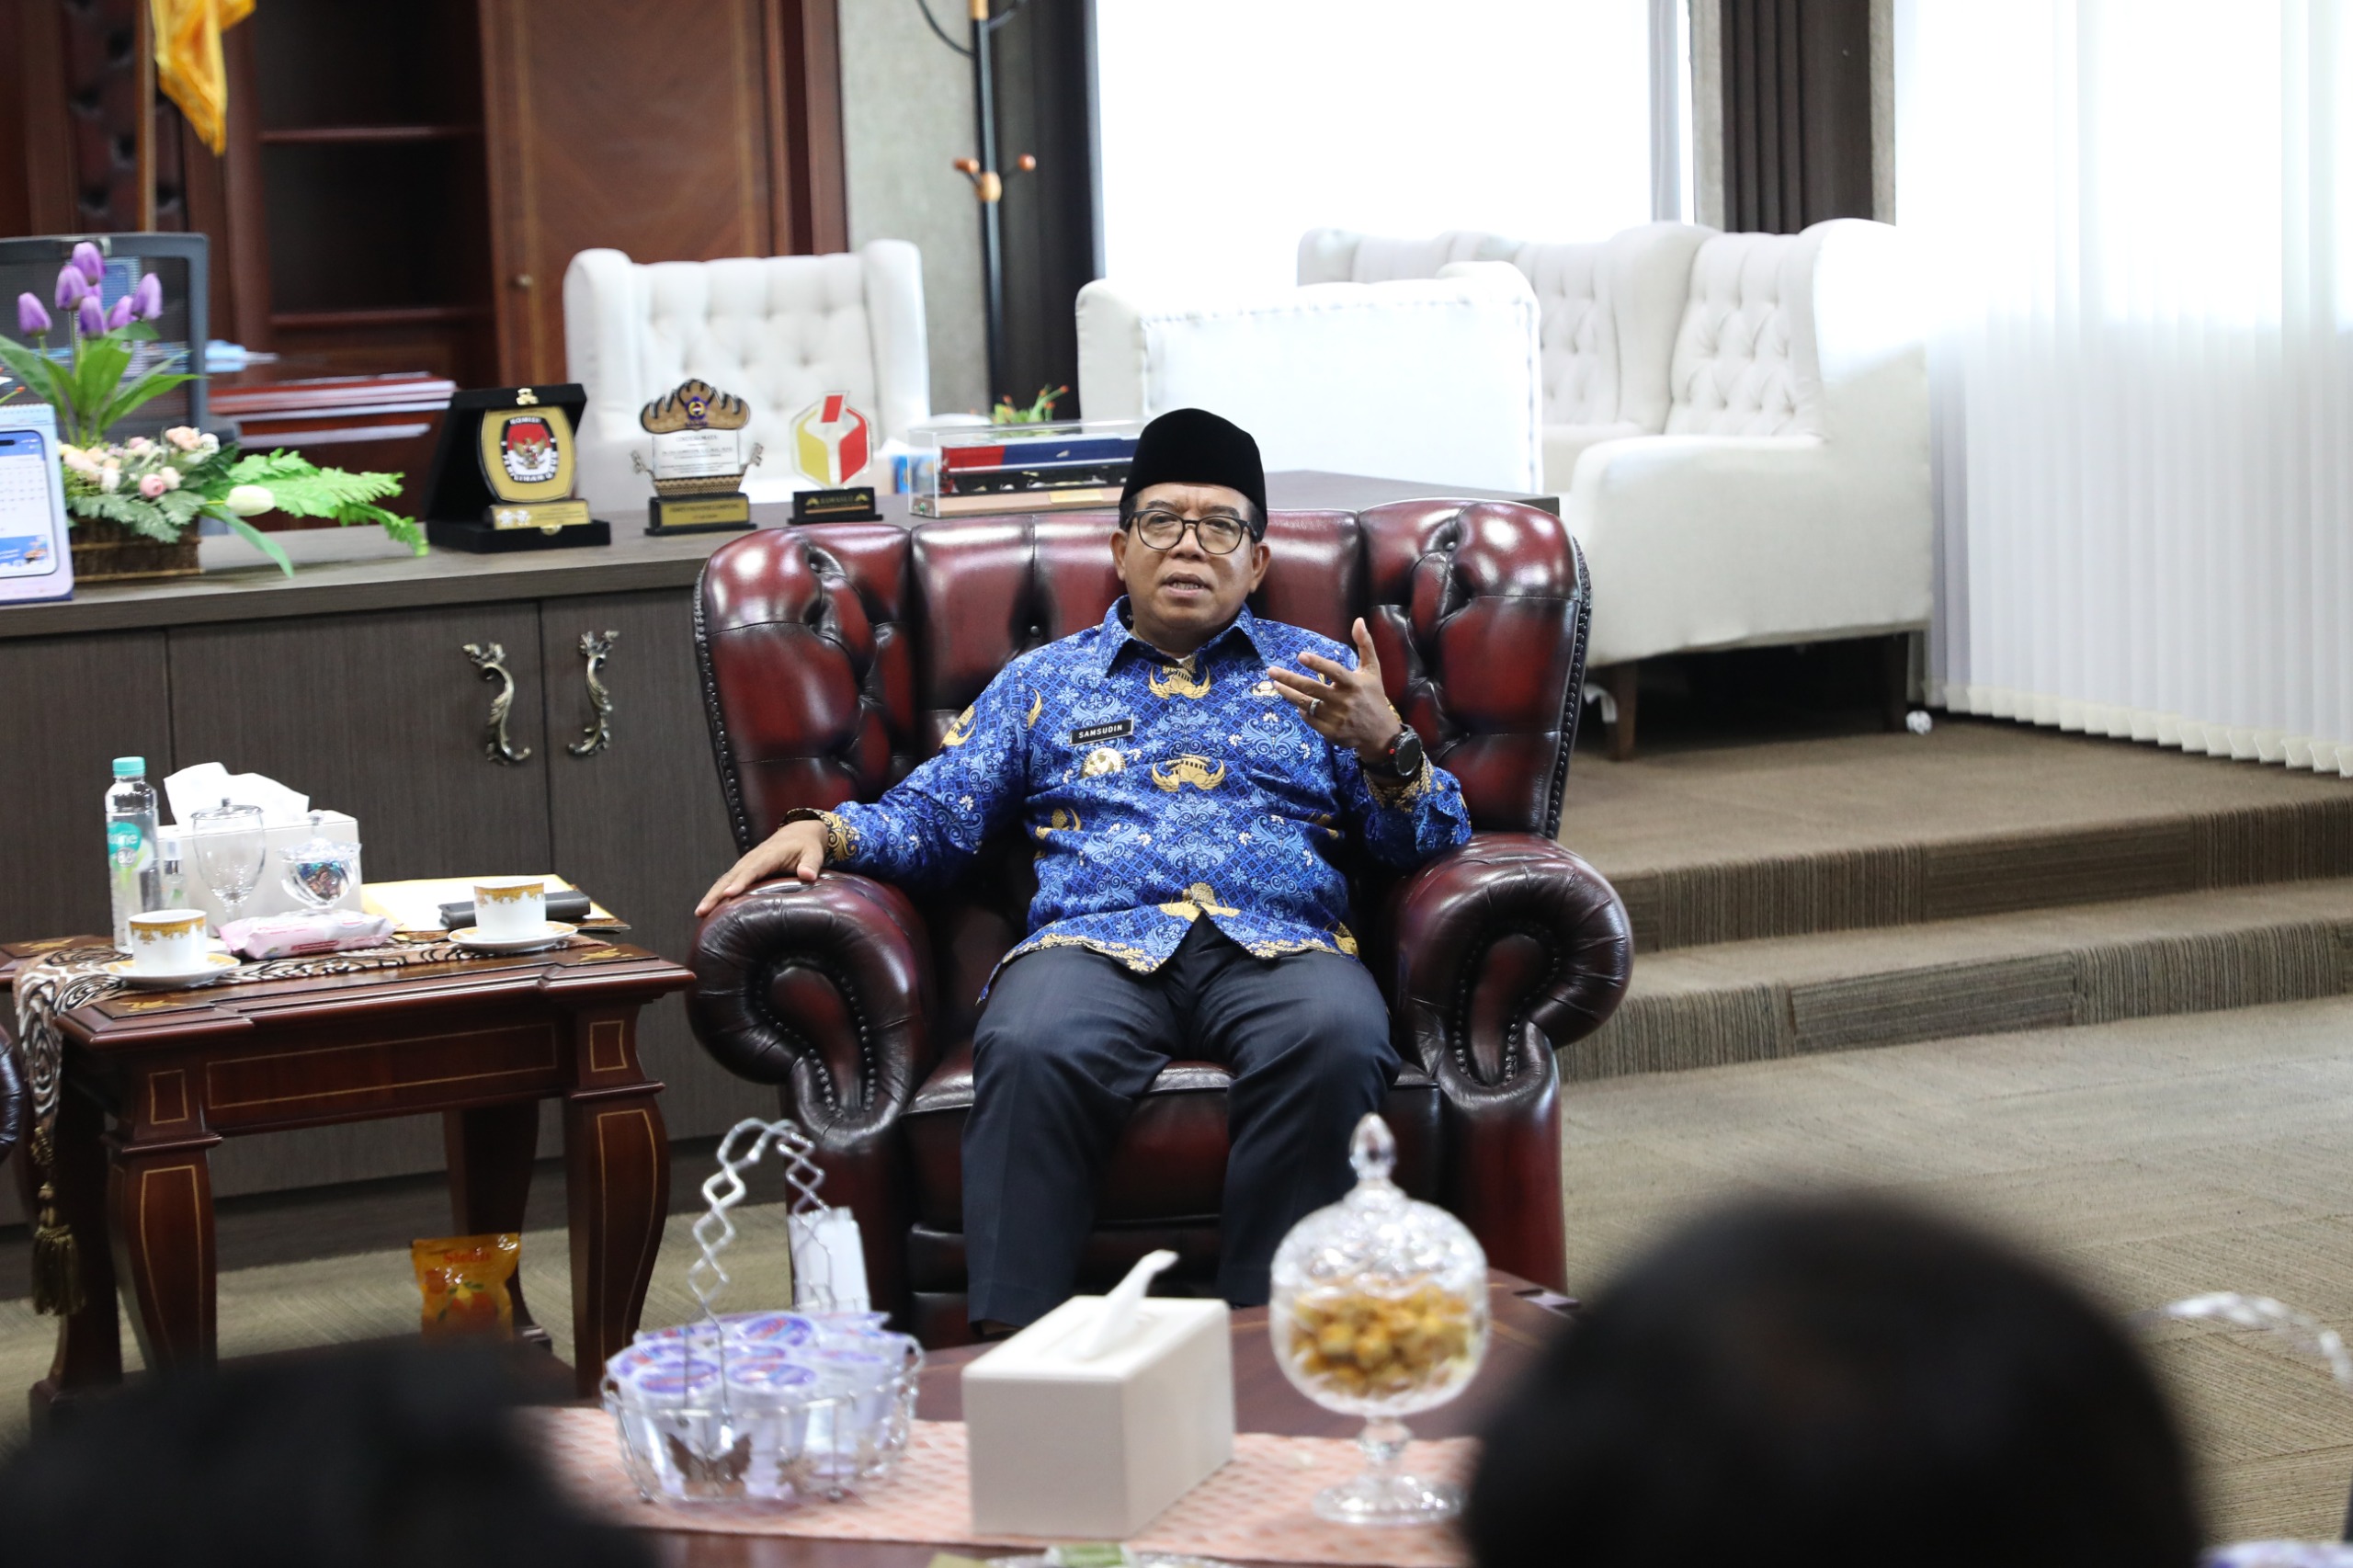 Kaget Dapati ASN Tidak Disiplin, Pj. Gubernur Lampung Samsudin: Kita Beri Peringatan!